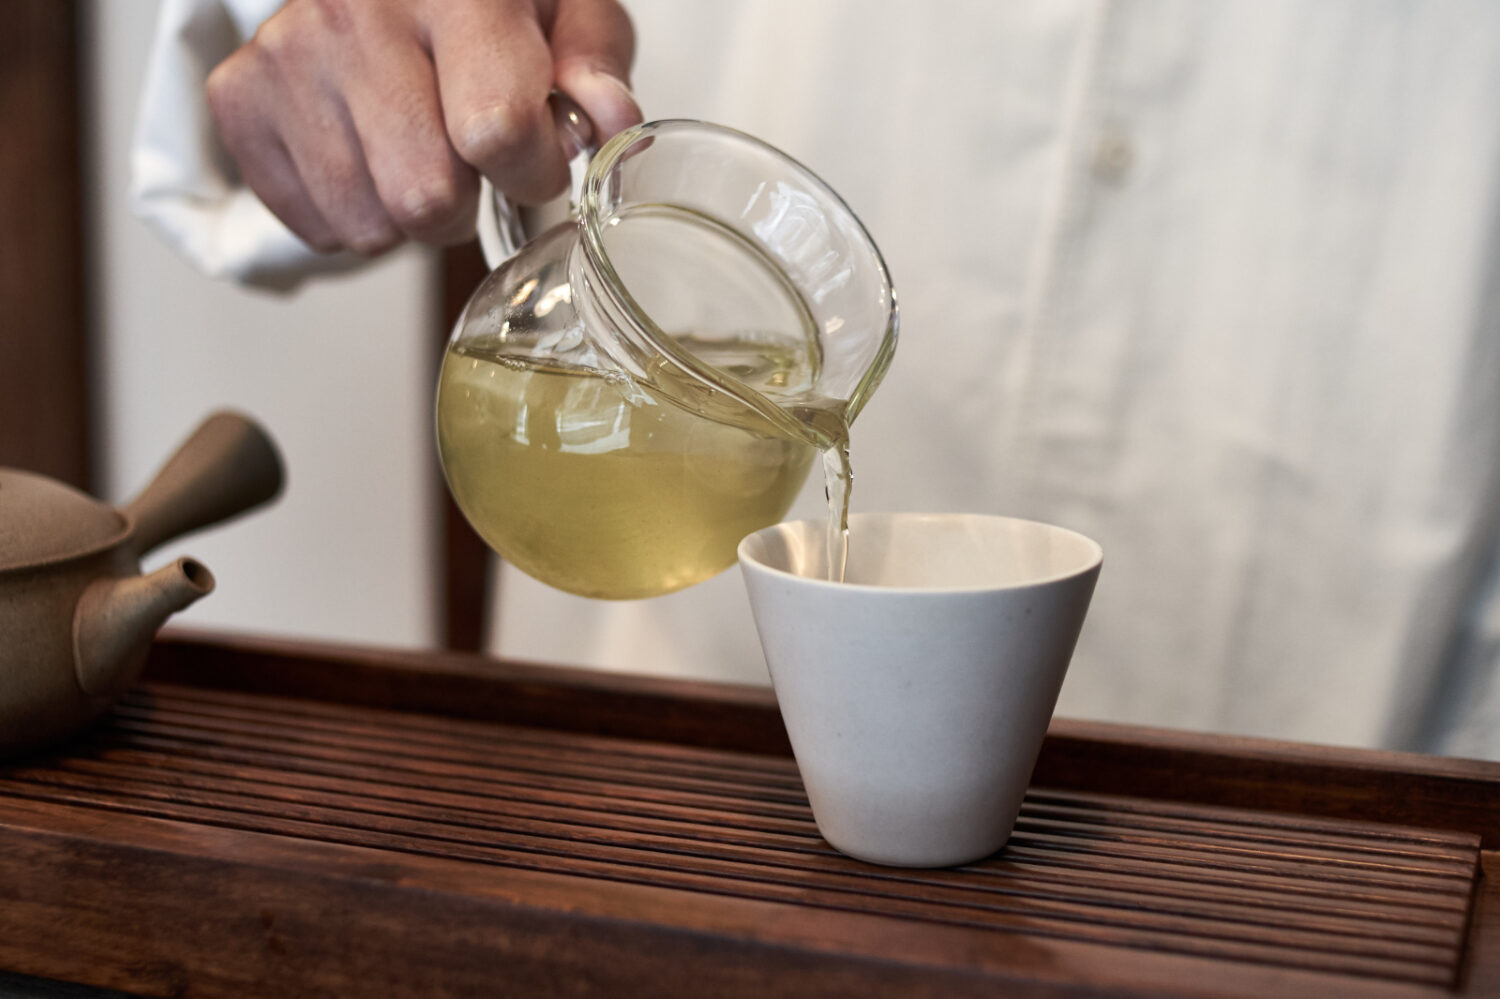 静岡のお茶 写真集「Japanese tea」2016年 日興美術株式会社 - アート 